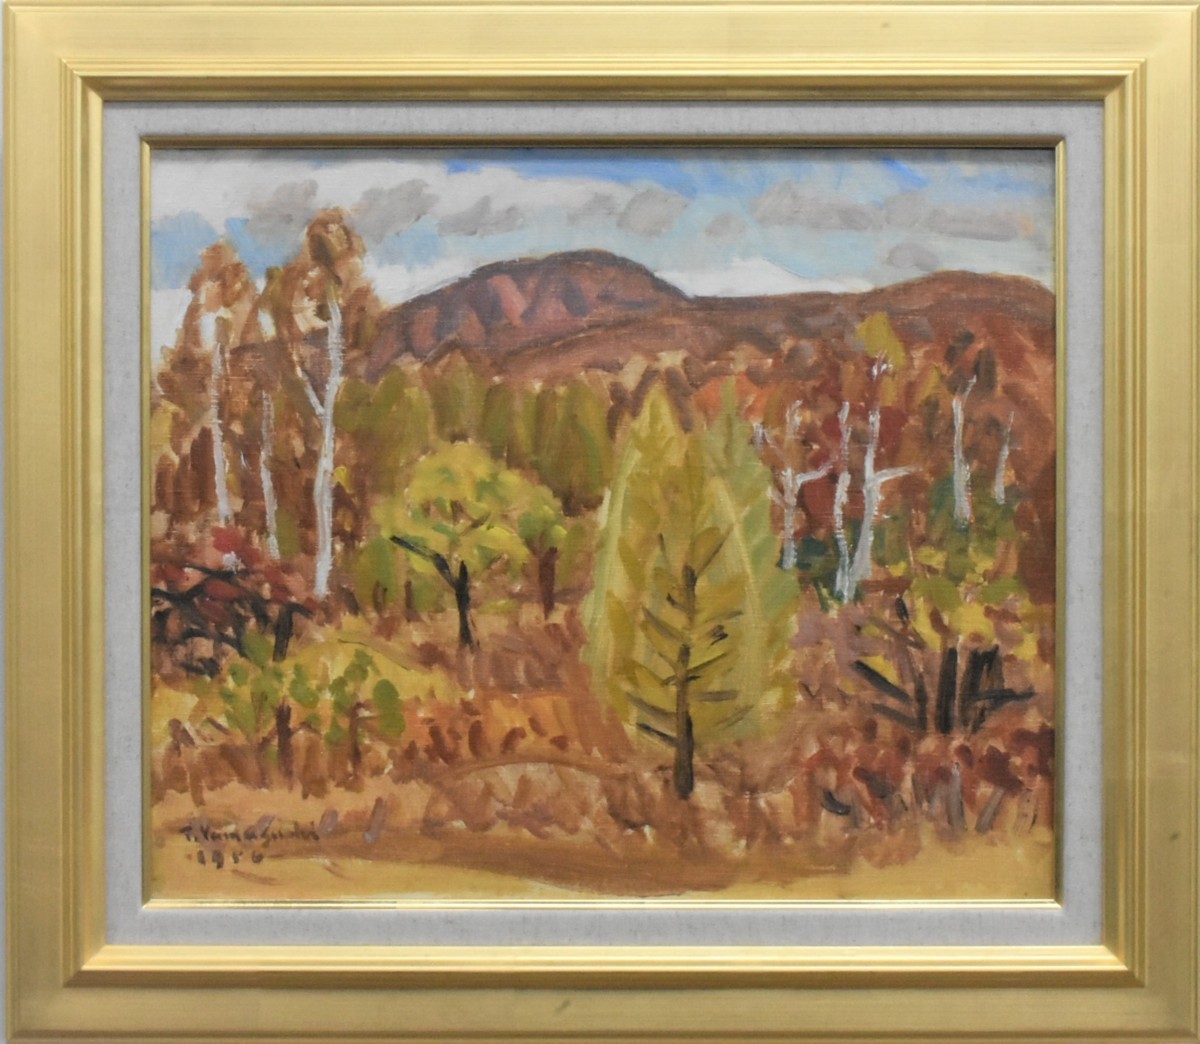 اكتشاف عظيم: الرسم الزيتي! معرض T.yamaguti 8F جبل الخريف ماساميتسو, تلوين, طلاء زيتي, طبيعة, رسم مناظر طبيعية